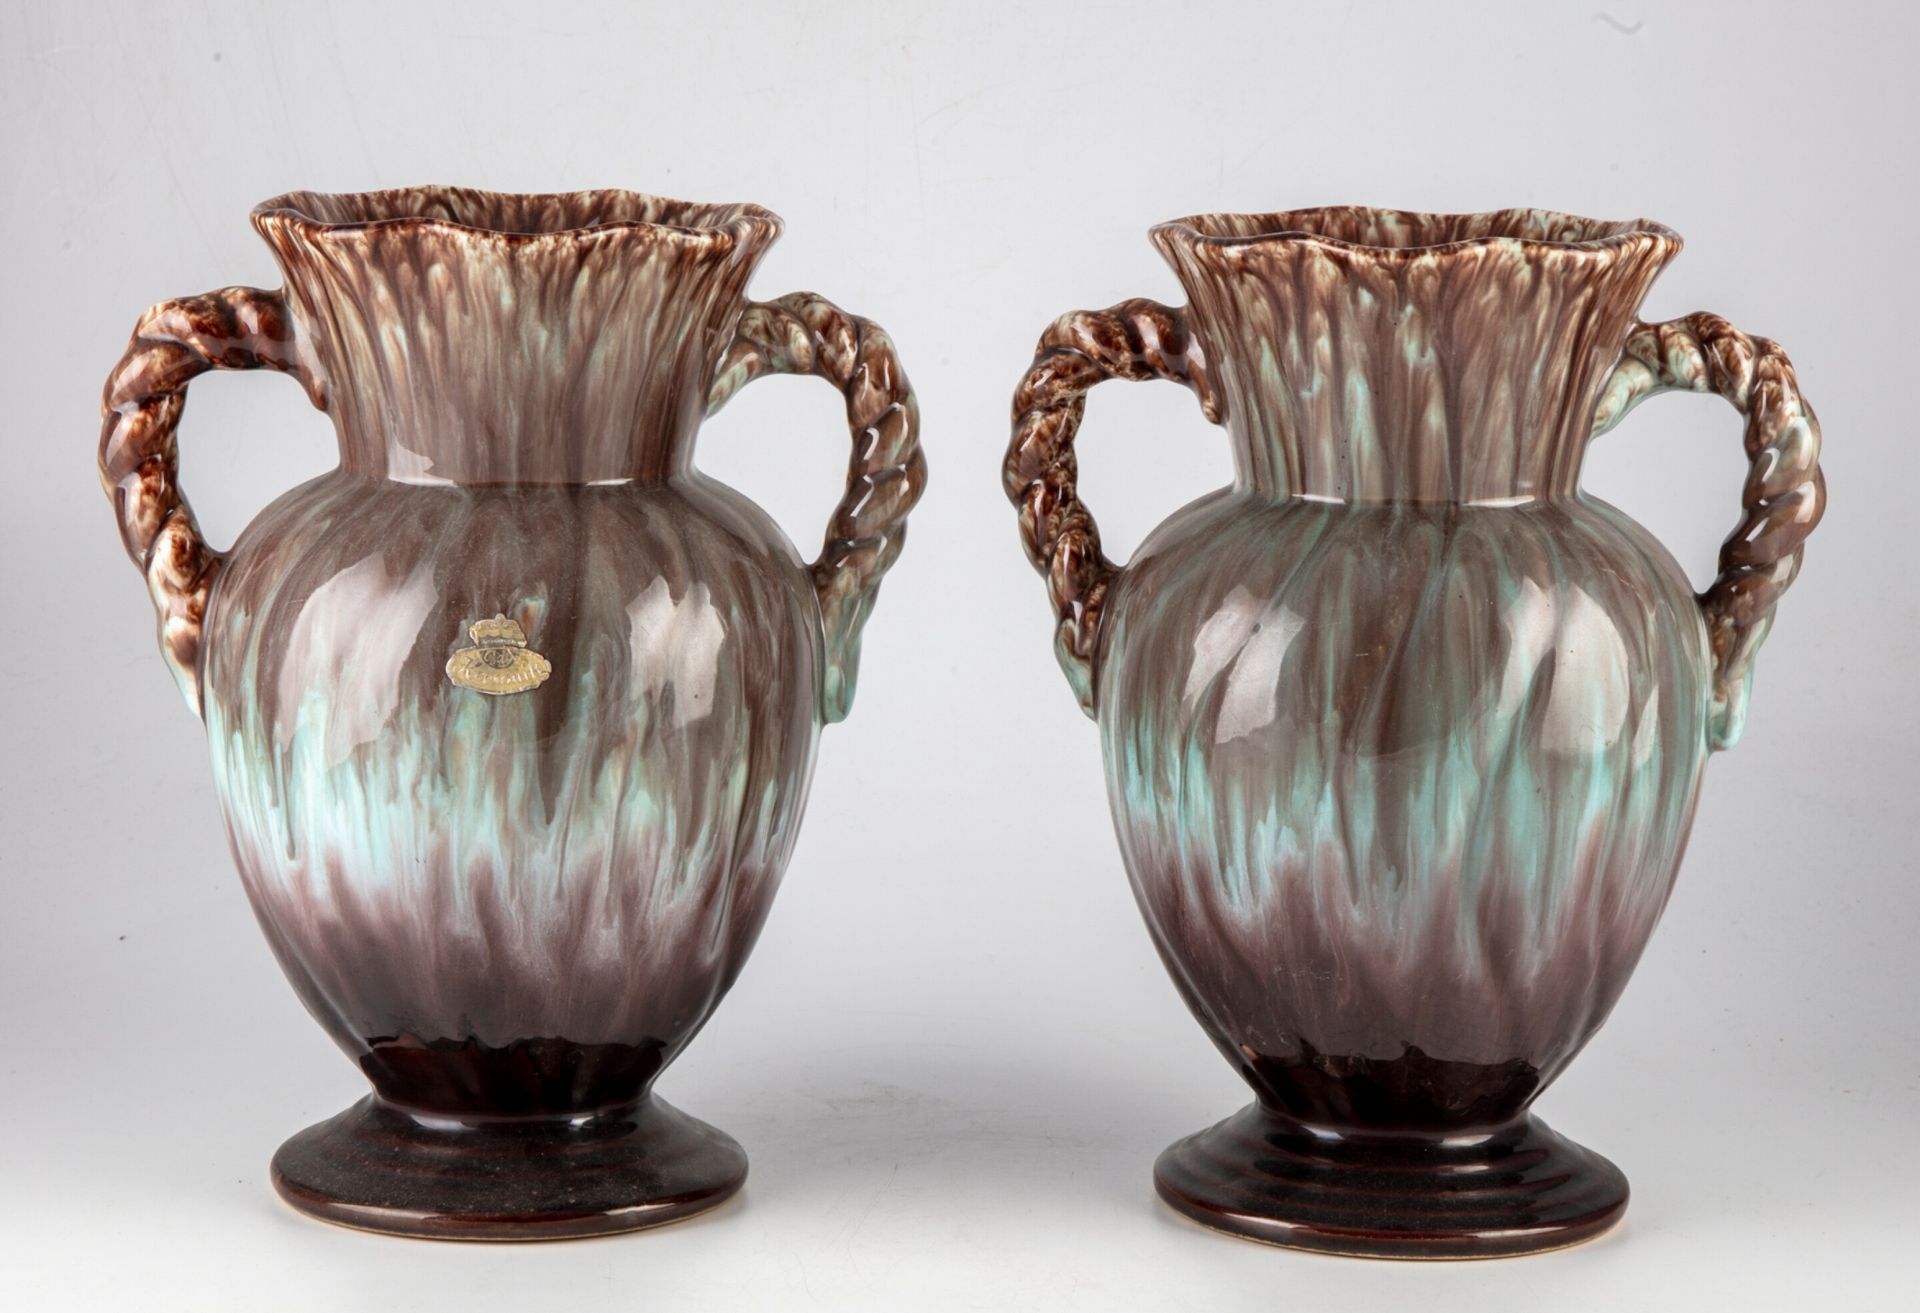 Null Paire de vases en barbotine aux anses godronnées.

H. : 28 cm